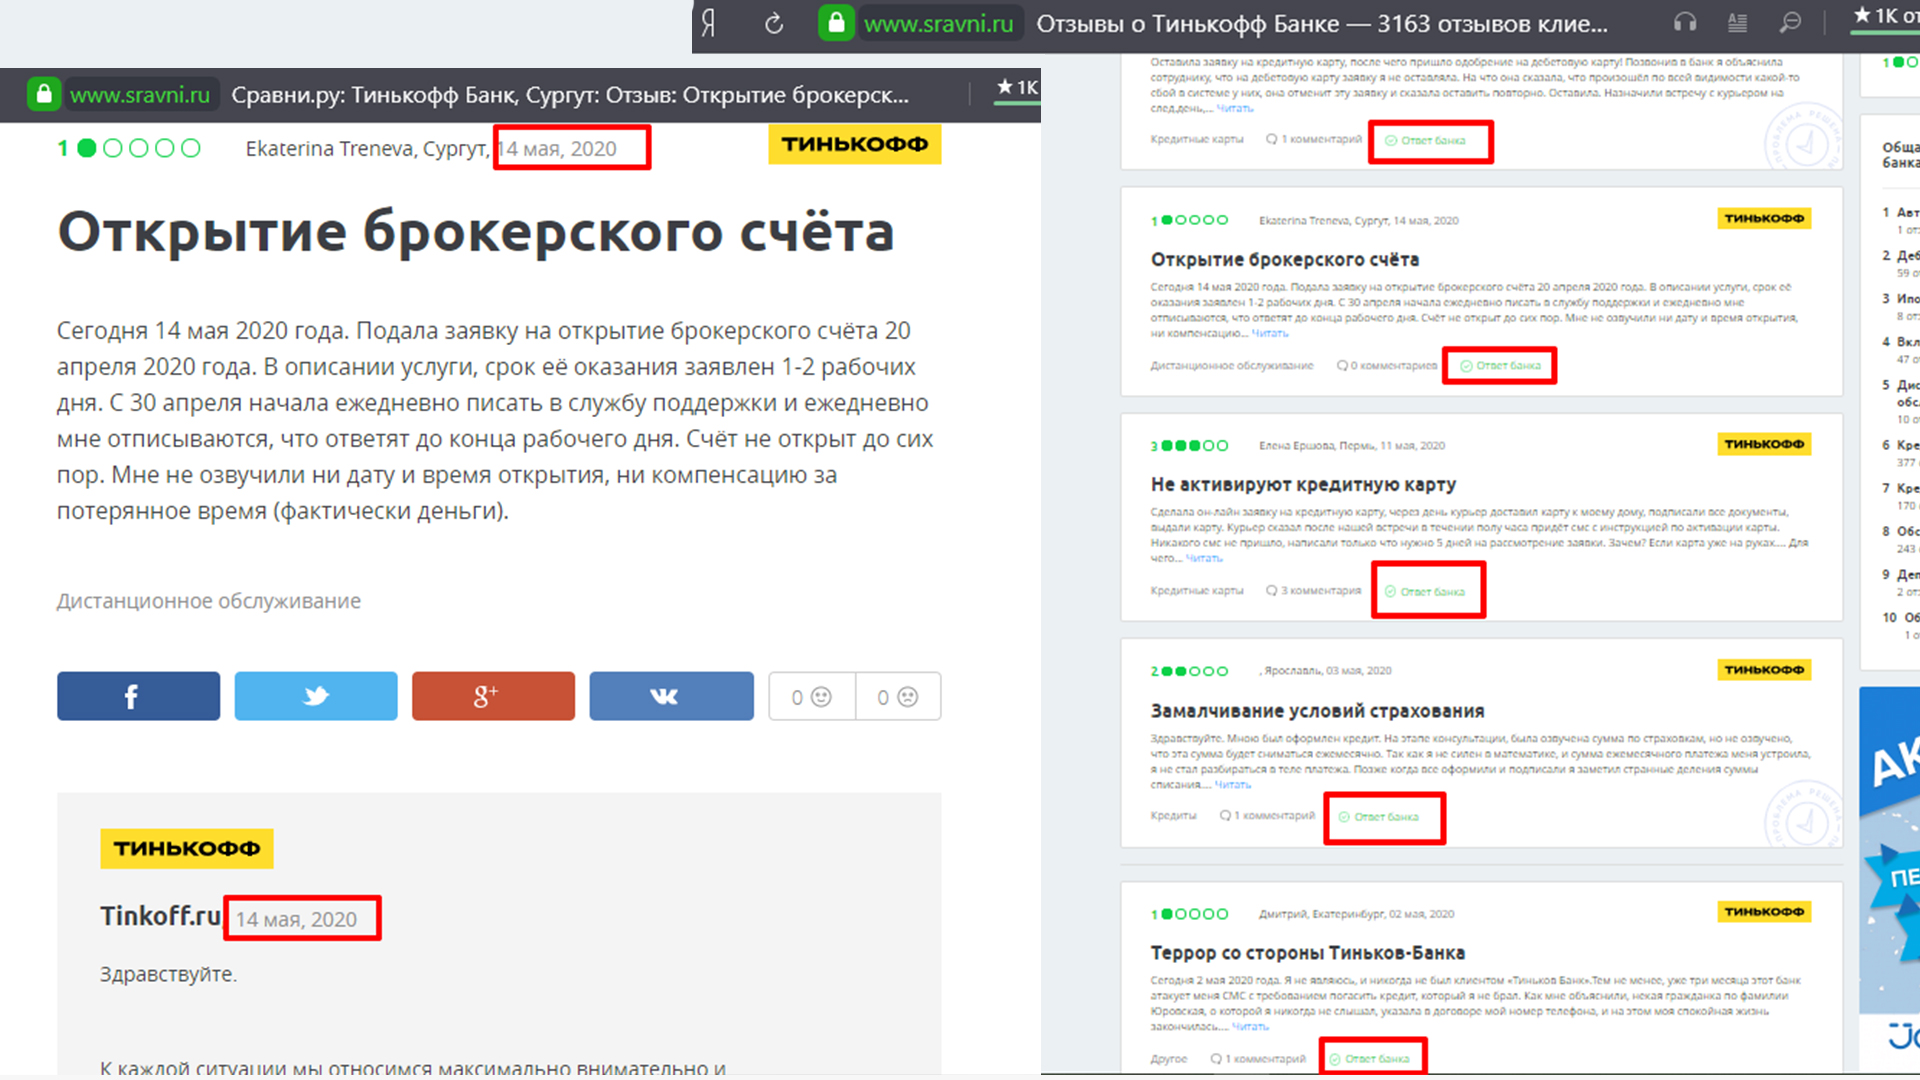 Ответы банка Тинькофф на запросы клиентов в сервисе Сравни.ру.